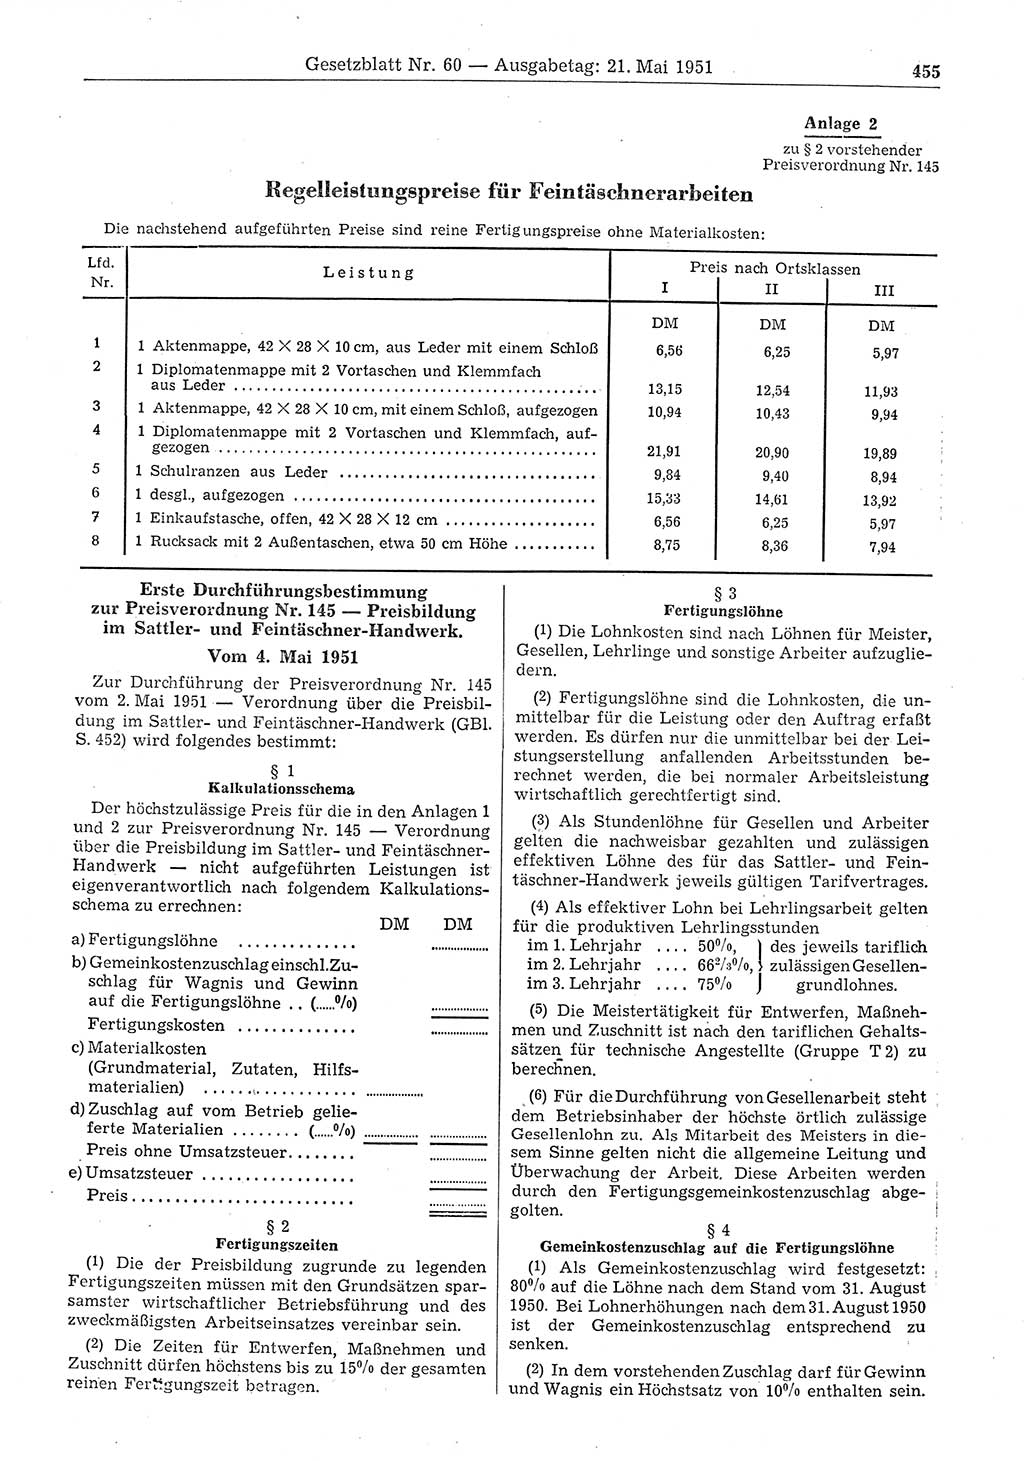 Gesetzblatt (GBl.) der Deutschen Demokratischen Republik (DDR) 1951, Seite 455 (GBl. DDR 1951, S. 455)